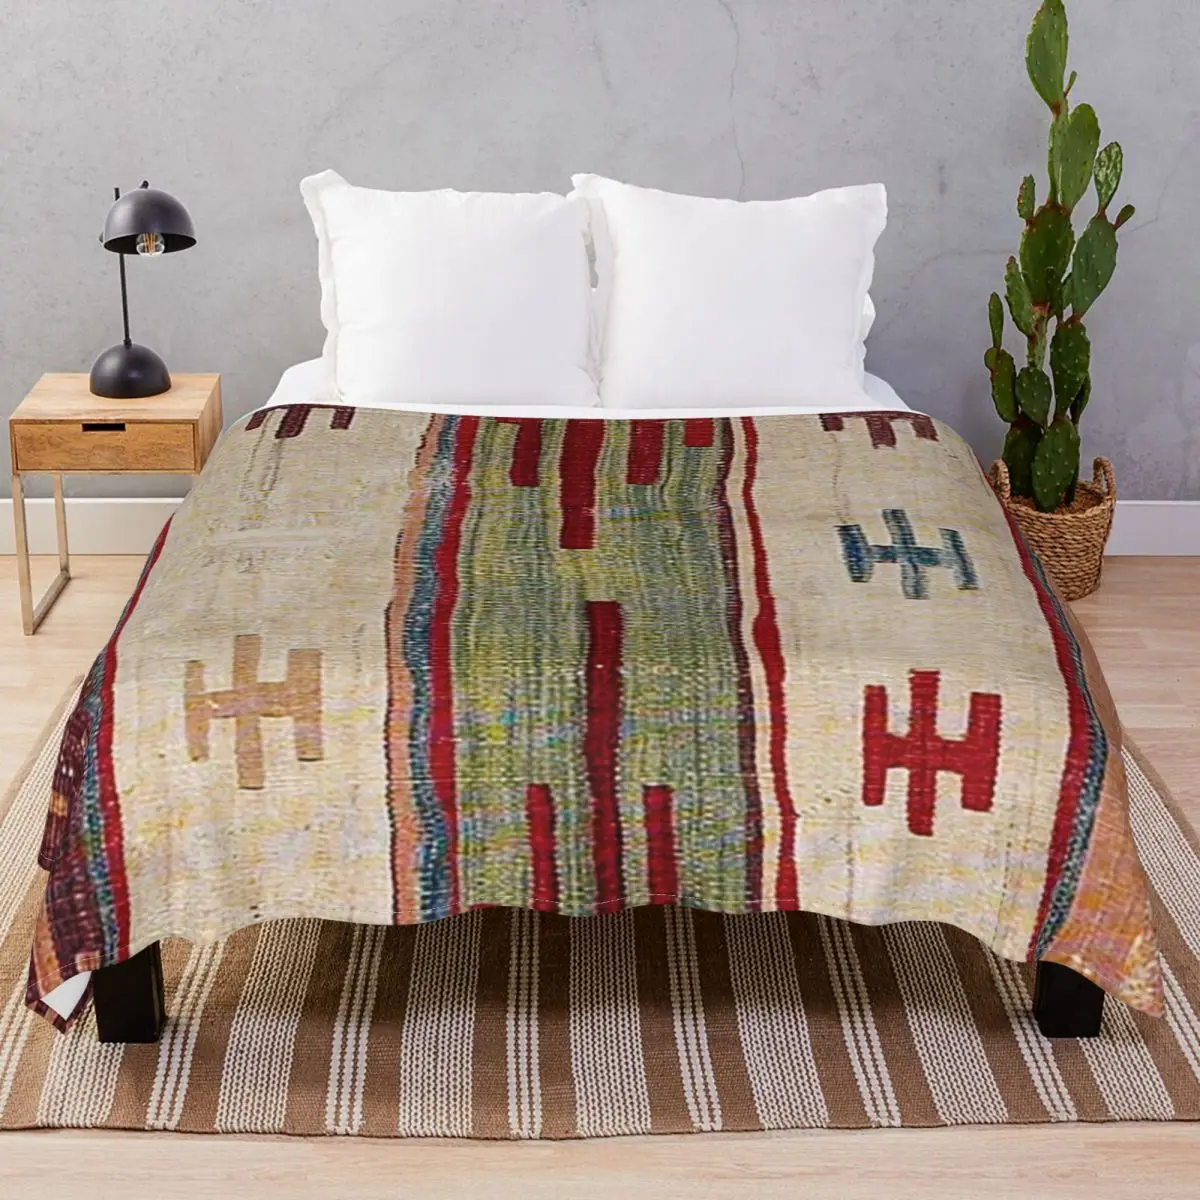 

Красочное декоративное одеяло с акцентом, флисовое весенне-осеннее многофункциональное покрывало для постельного белья, дивана, лагеря, офиса